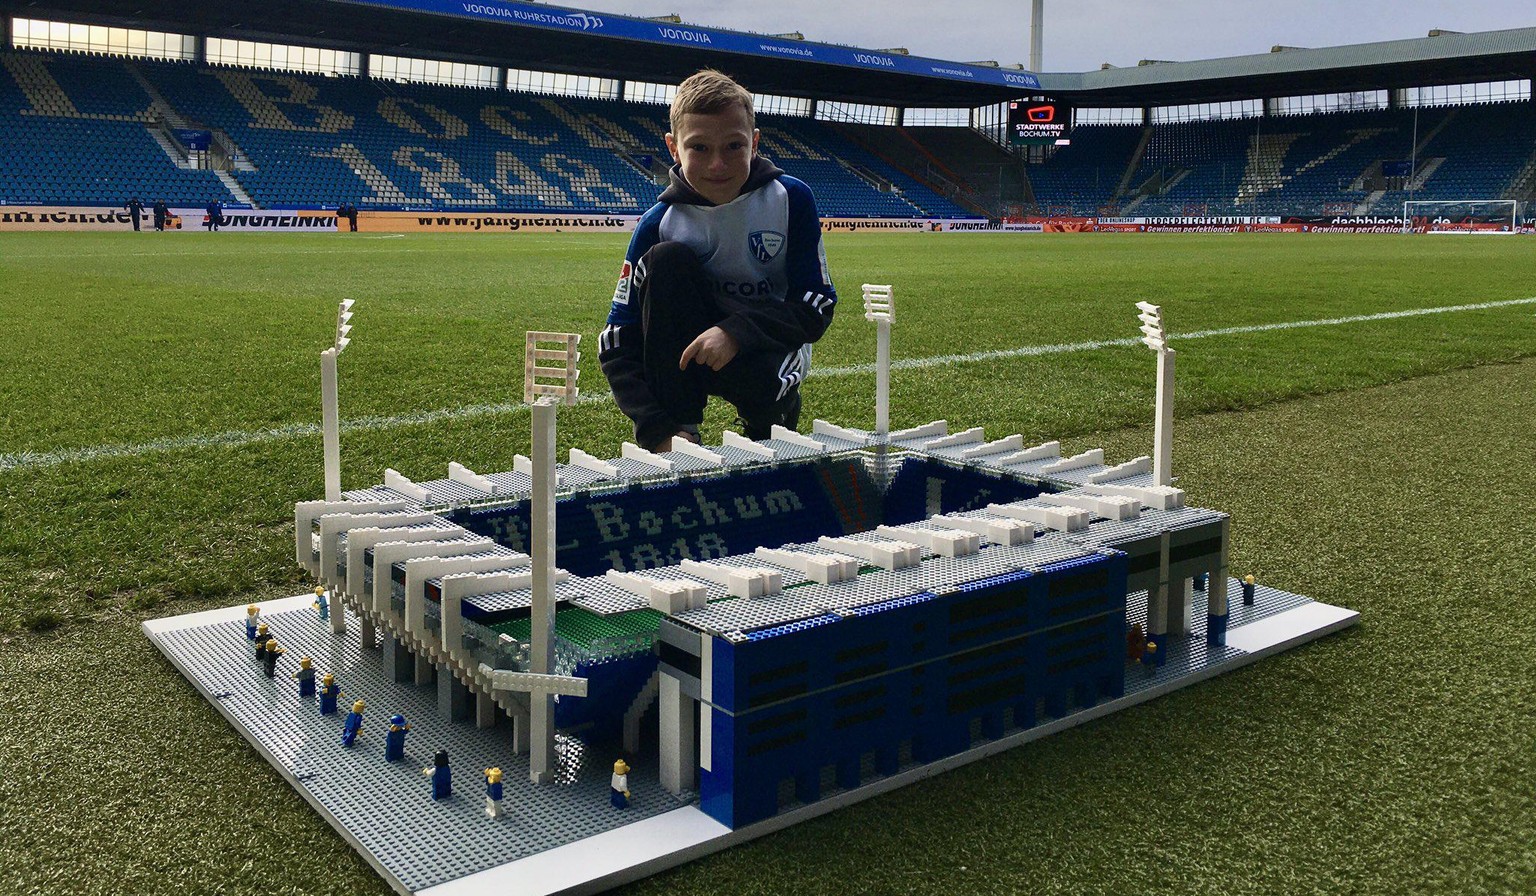 Immer wieder darf Joe Bryant seine Lego-Modelle im Original-Stadion präsentieren.